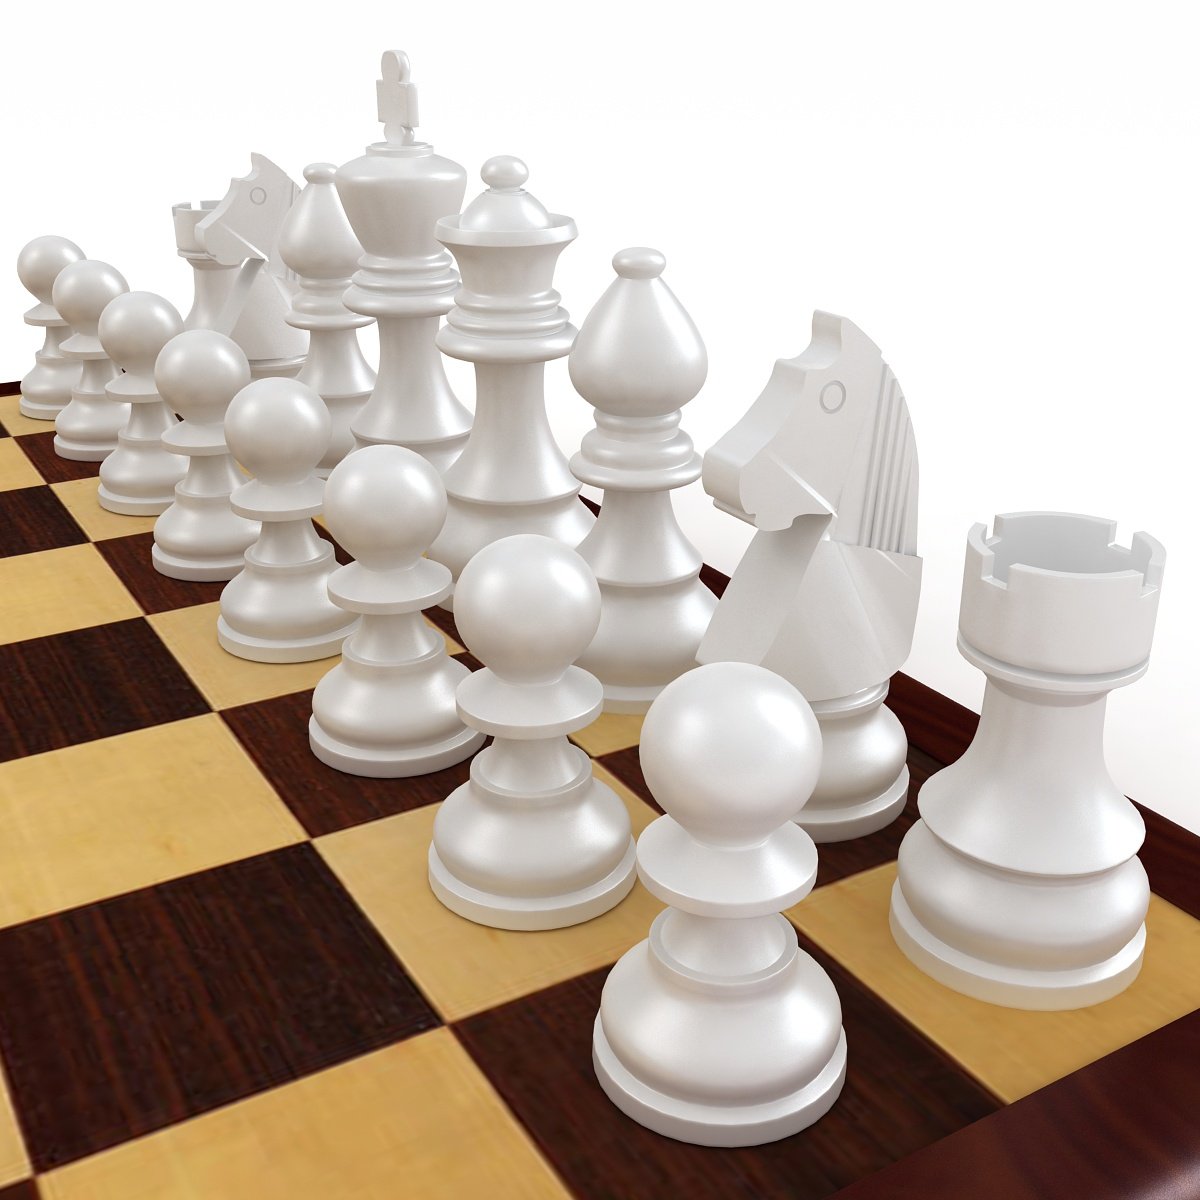 Horse Chess Game Piece - Cavalo Jogo de Xadrez 3D model